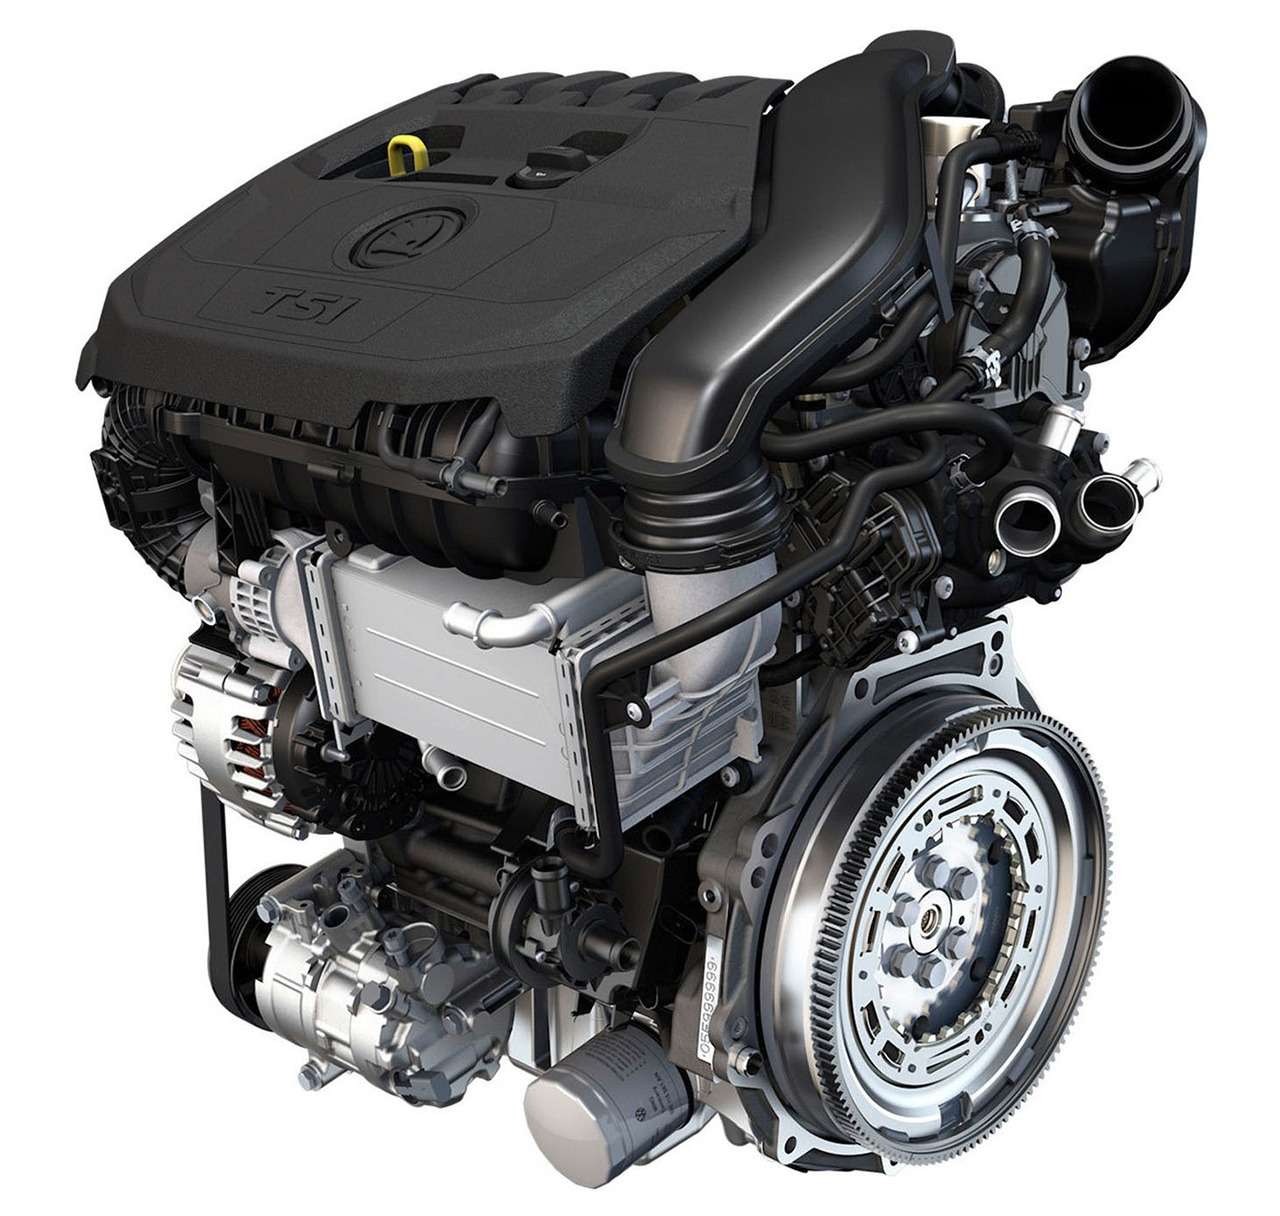 В Европе основным двигателем концерна VAG становится 1,5-литровый EVO. В основе все тот же блок ЕА211. Но есть и отличия. Например, жидкостный промежуточный охладитель воздуха. Одна из главных особенностей этого мотора – он работает по циклу Миллера.